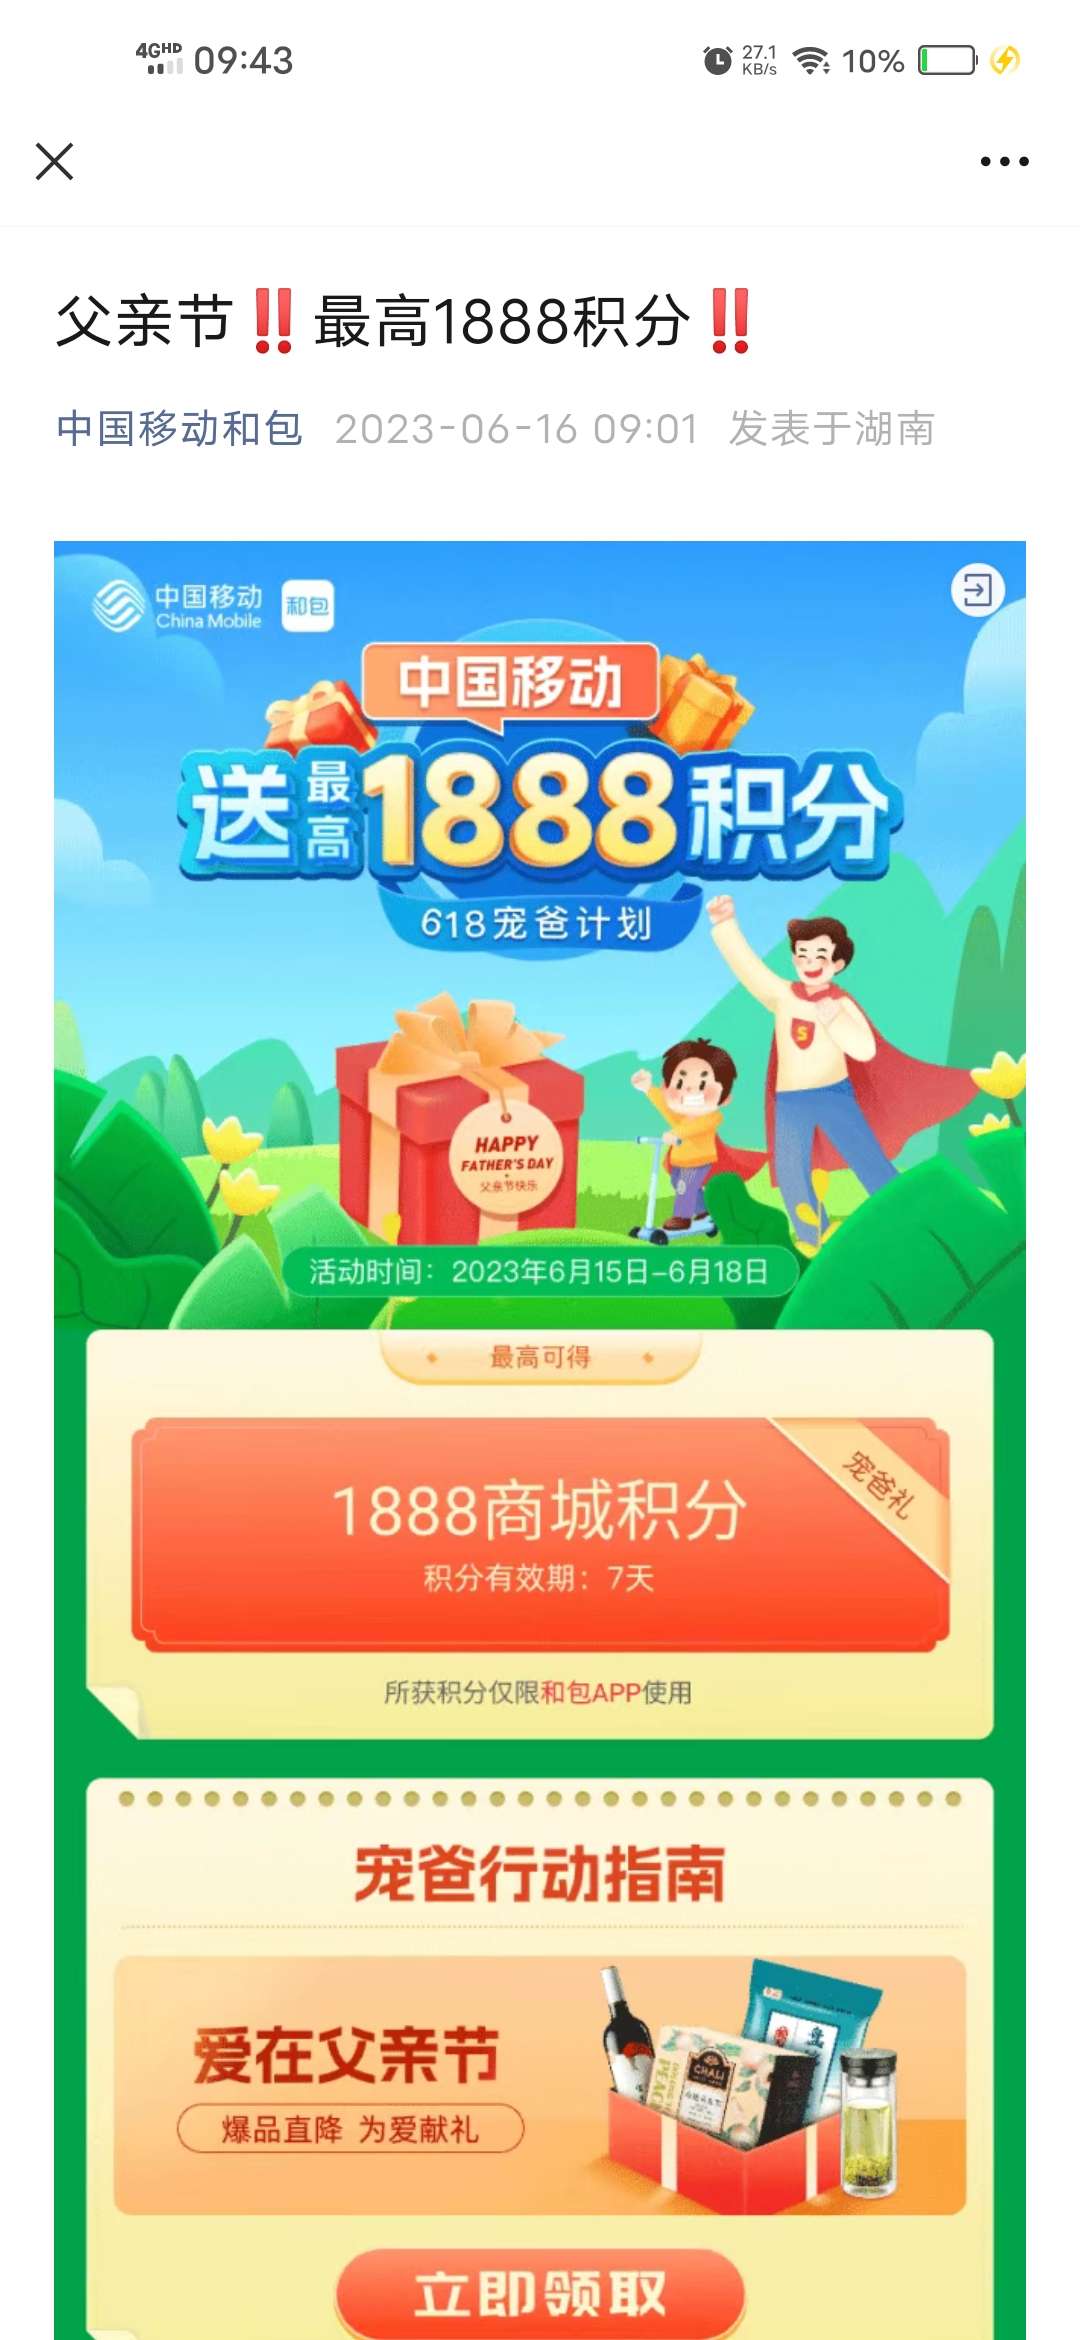 【虚拟物品】中国移动父亲节抽最高1888和包积分_福利线报